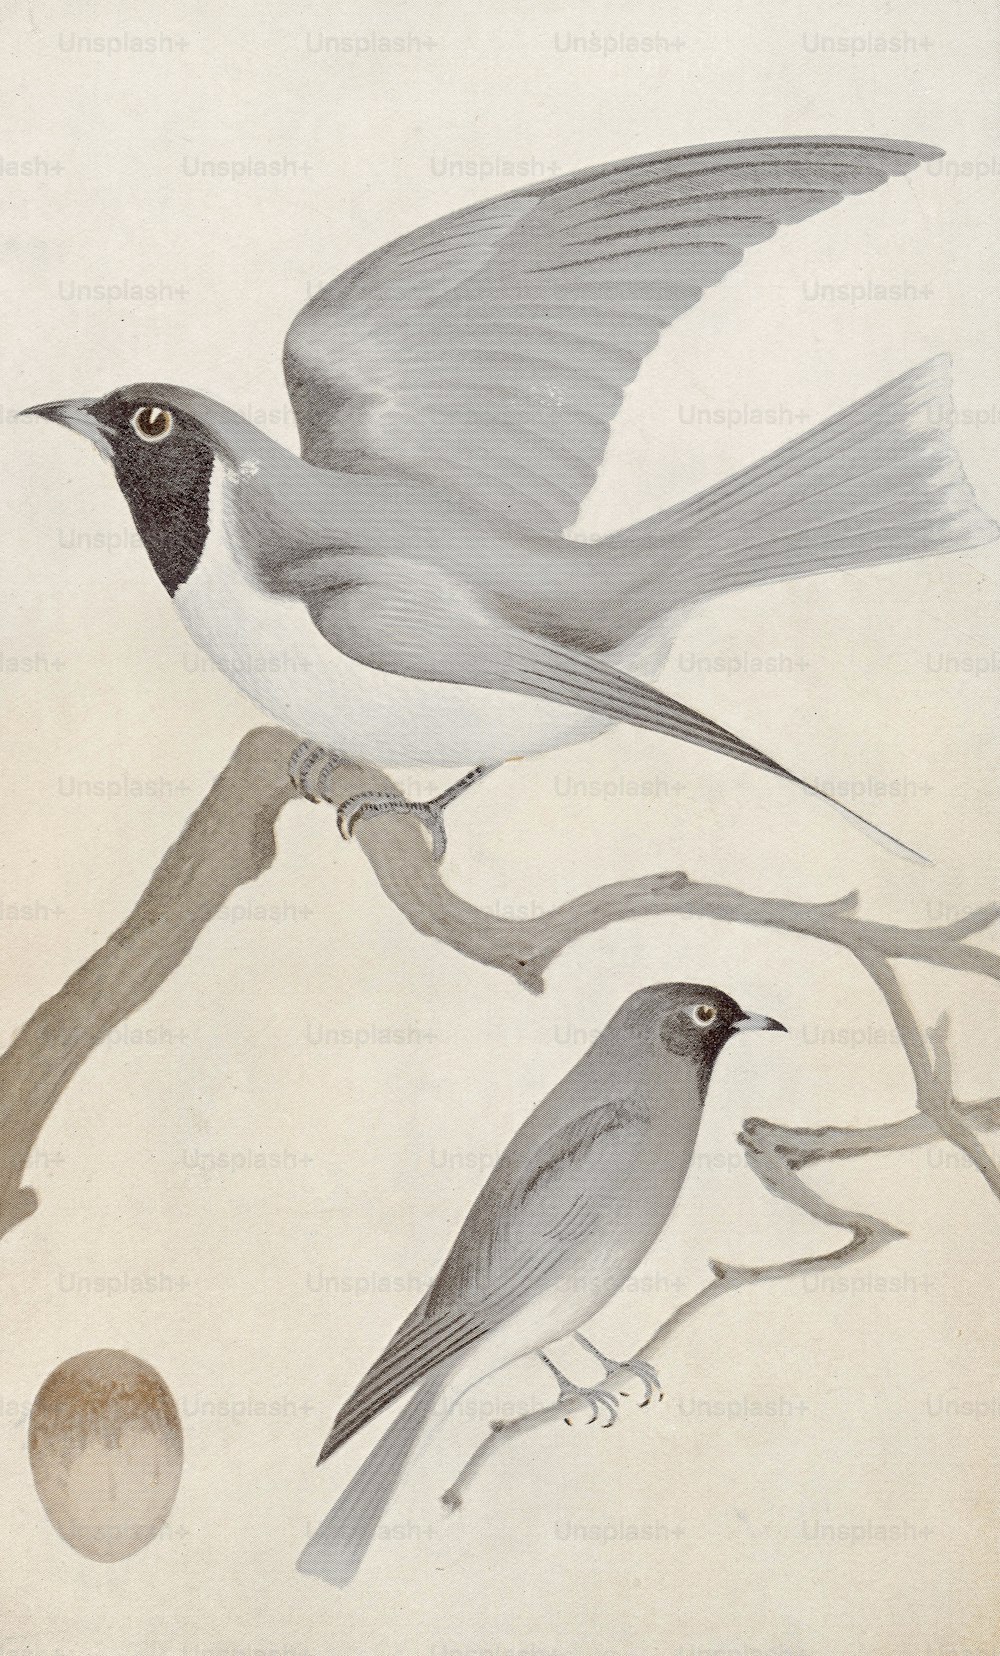 가면쓴 나무 제비 (Artamus personatus), 1850 년경. C. C. Brittlebank의 그림 후 Gould의 인쇄. (사진: Hulton Archive/Getty Images)